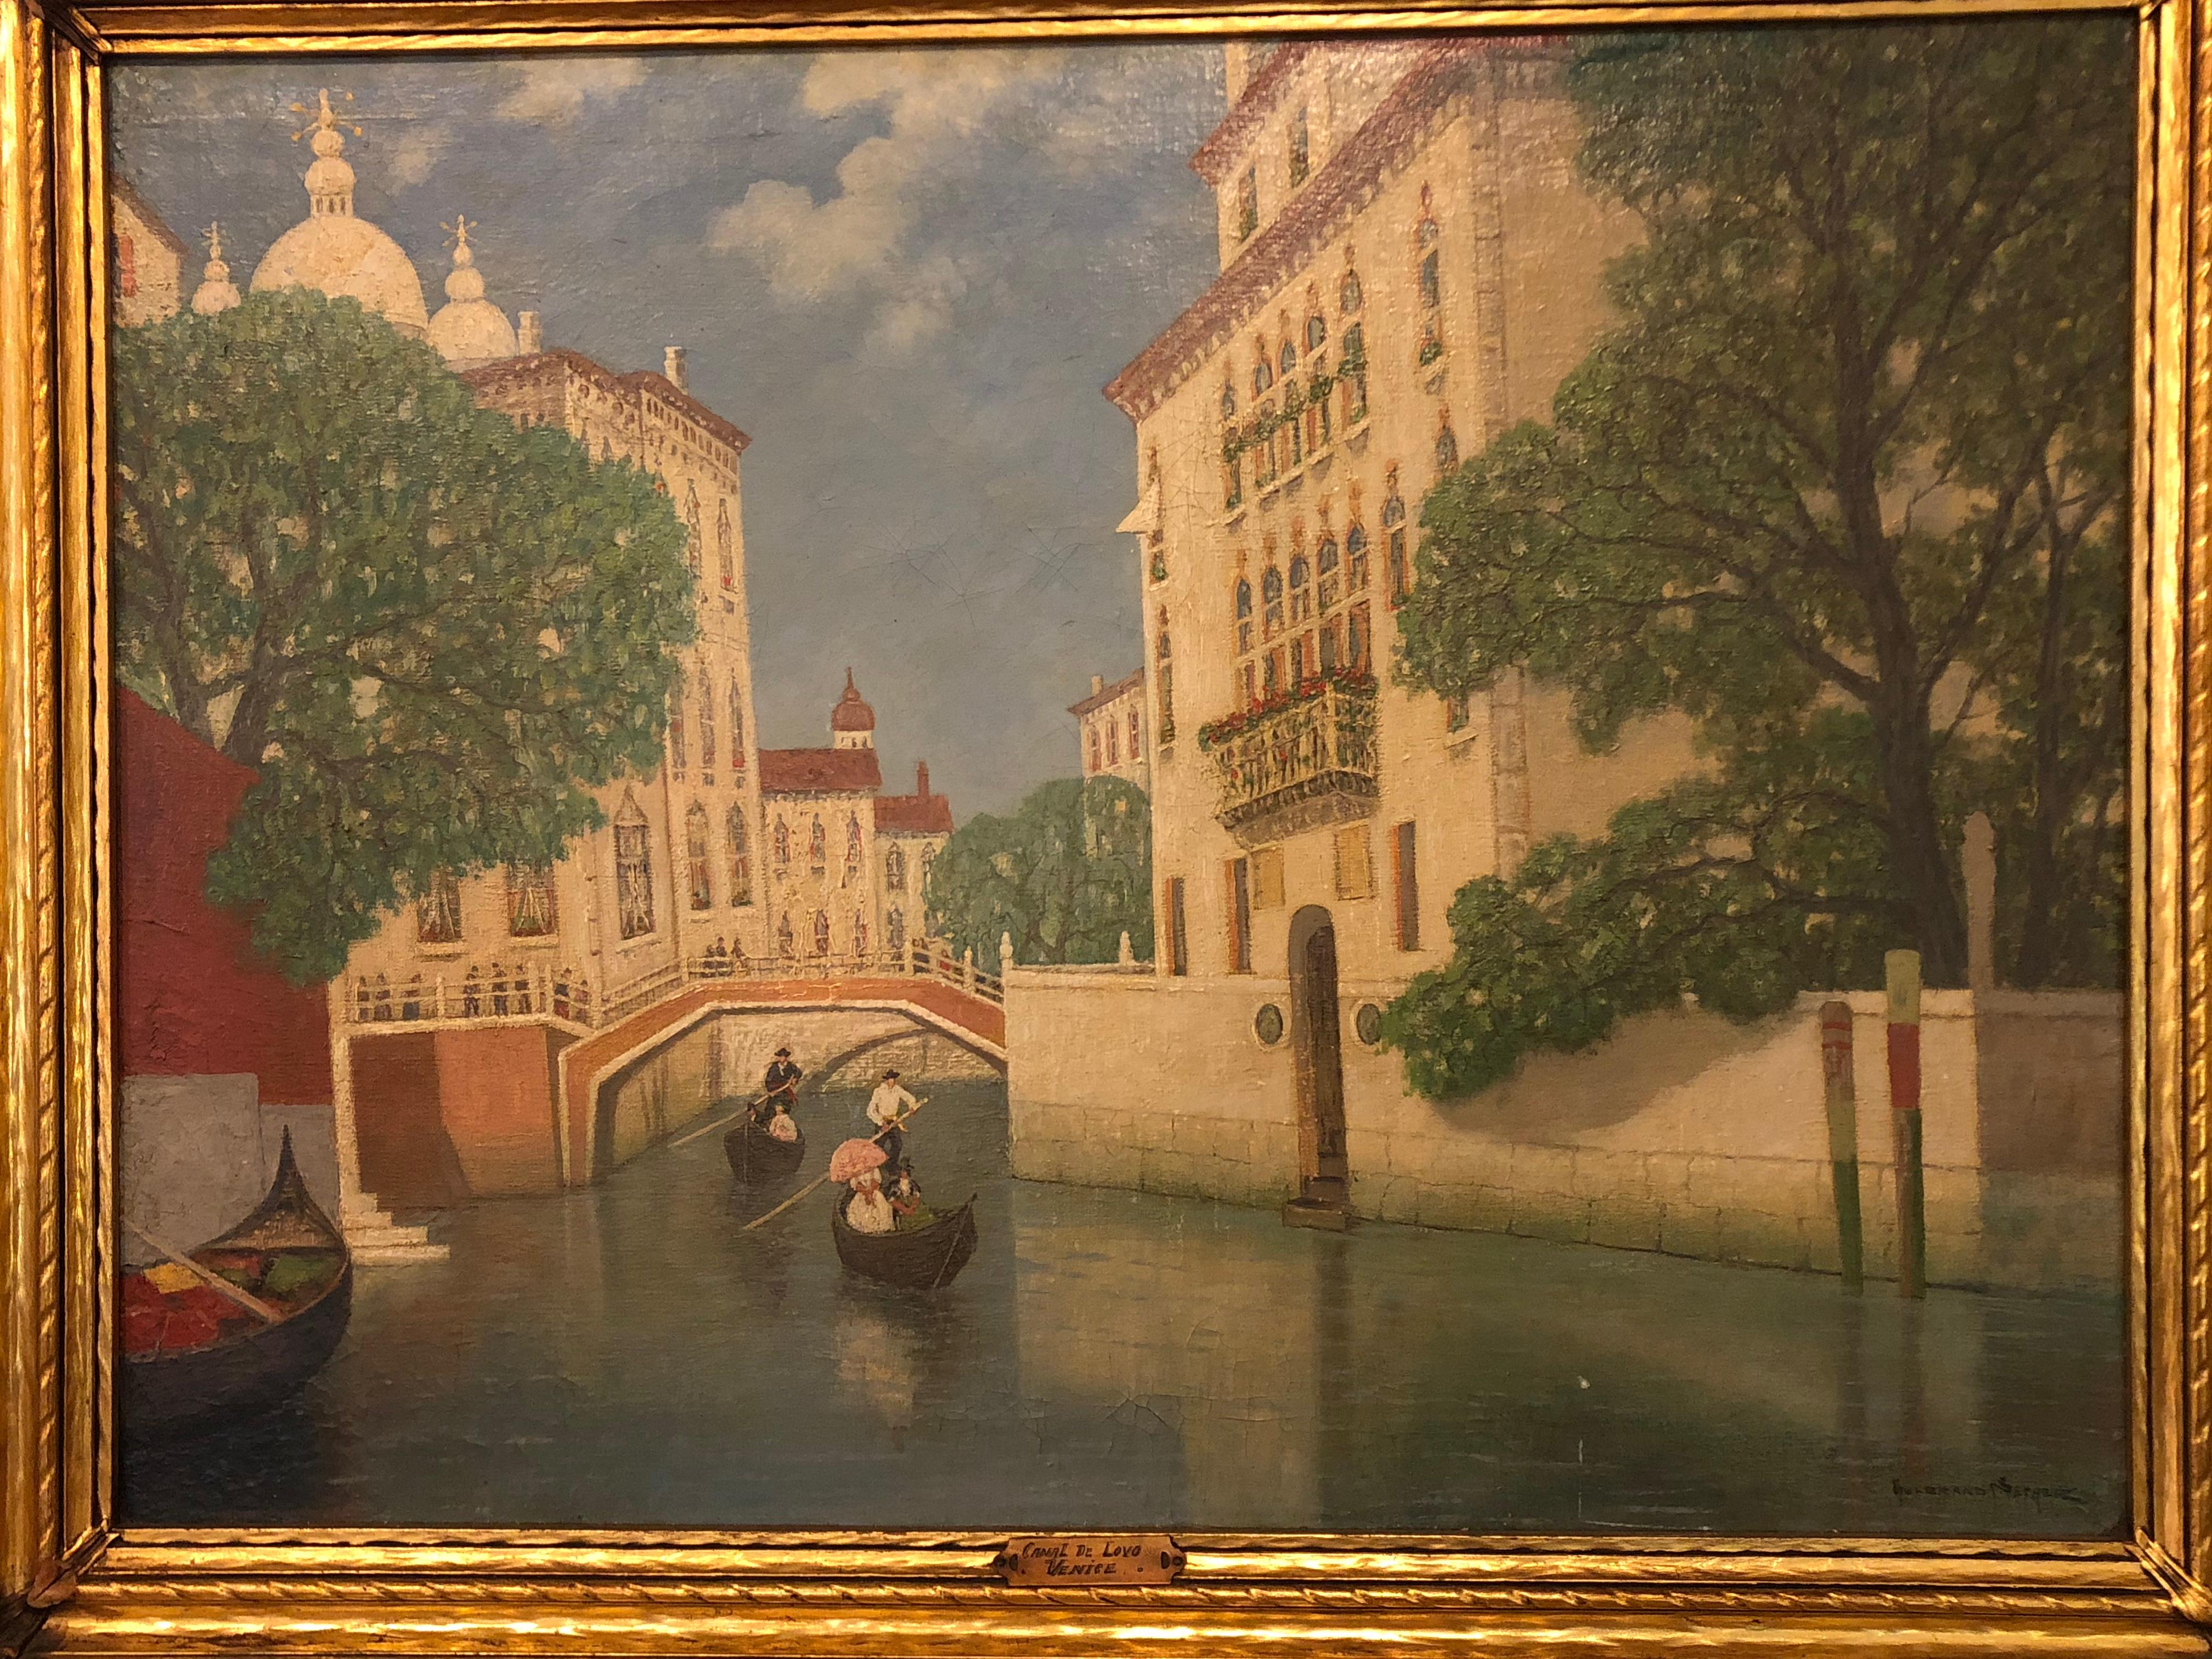 Ein Gulbrandt Sether norwegisch-amerikanisches Öl auf Leinwand eines Kanals in Venedig. Canal De lovo -Venedig in einem feinen und stark verzierten Goldrahmen. (Papierkram auf der Rückseite).
Gulbrand Sether wurde 1869 in Saerskovbygda, Elverum,